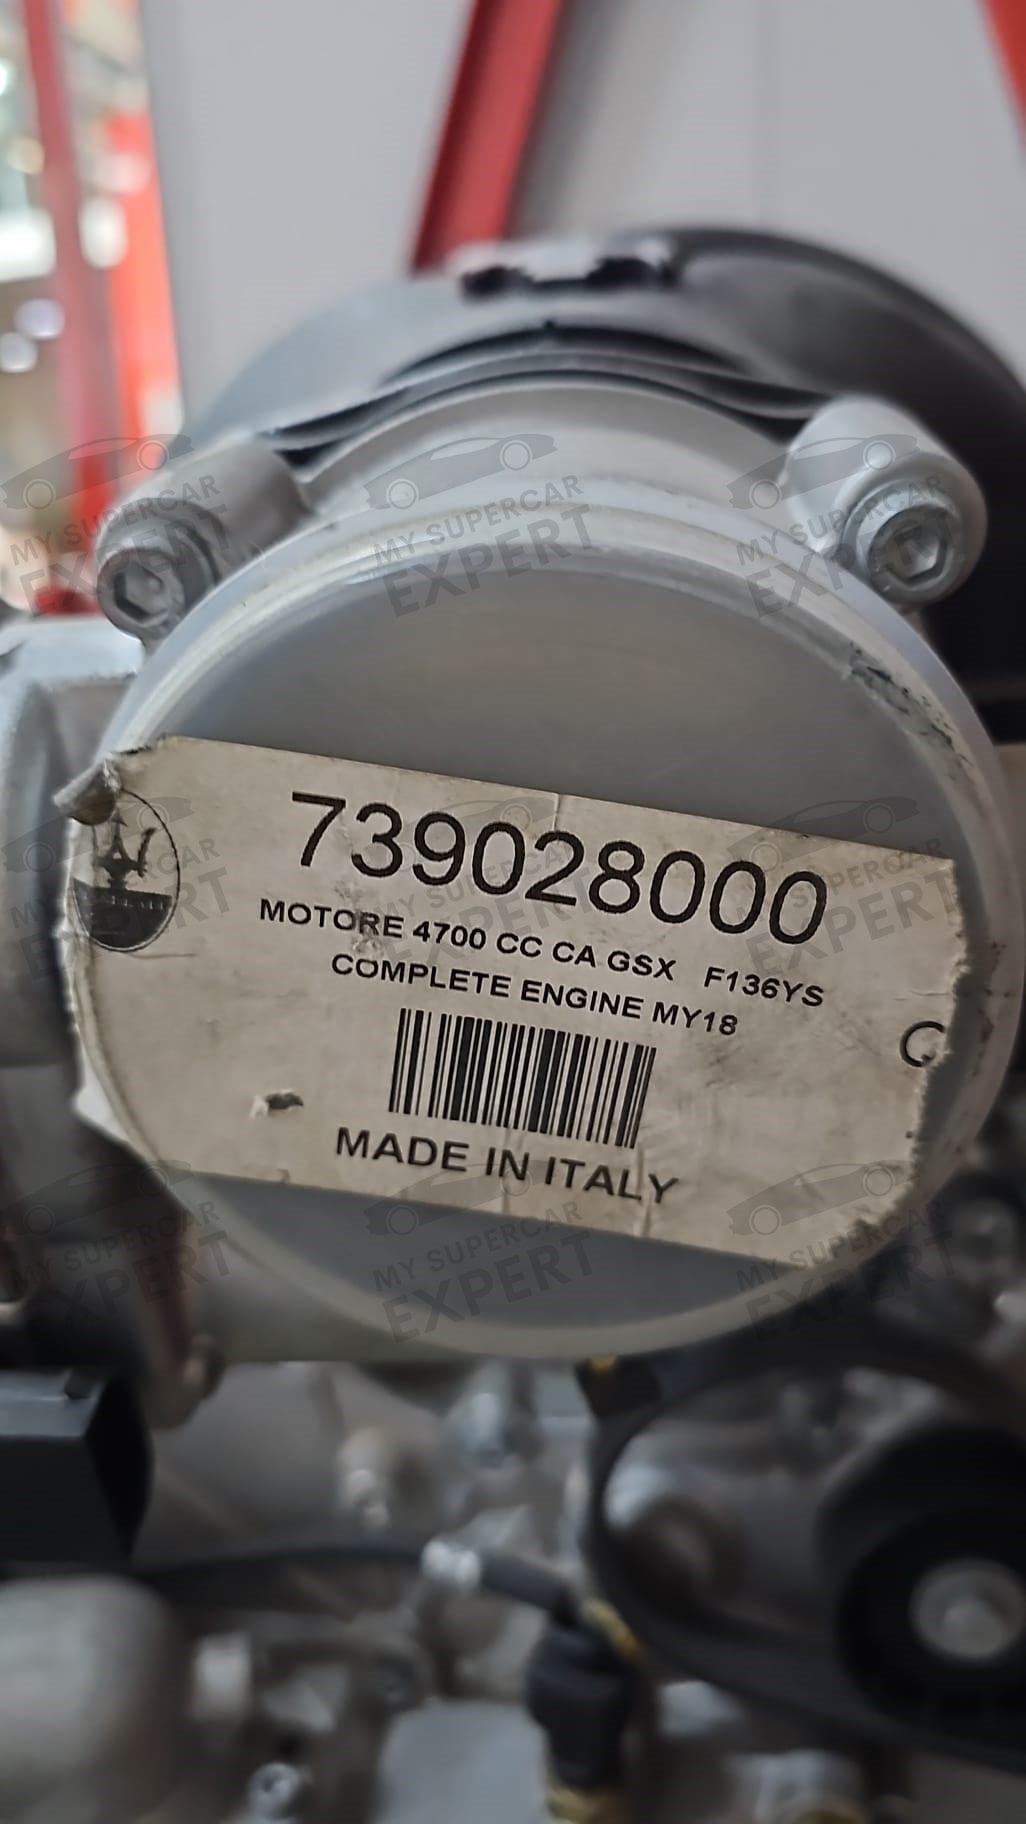 Двигатель Maserati Granturismo F136YS Full V8 в сборе, 2018 год выпуска 739028000, абсолютно новый, никогда не использовался